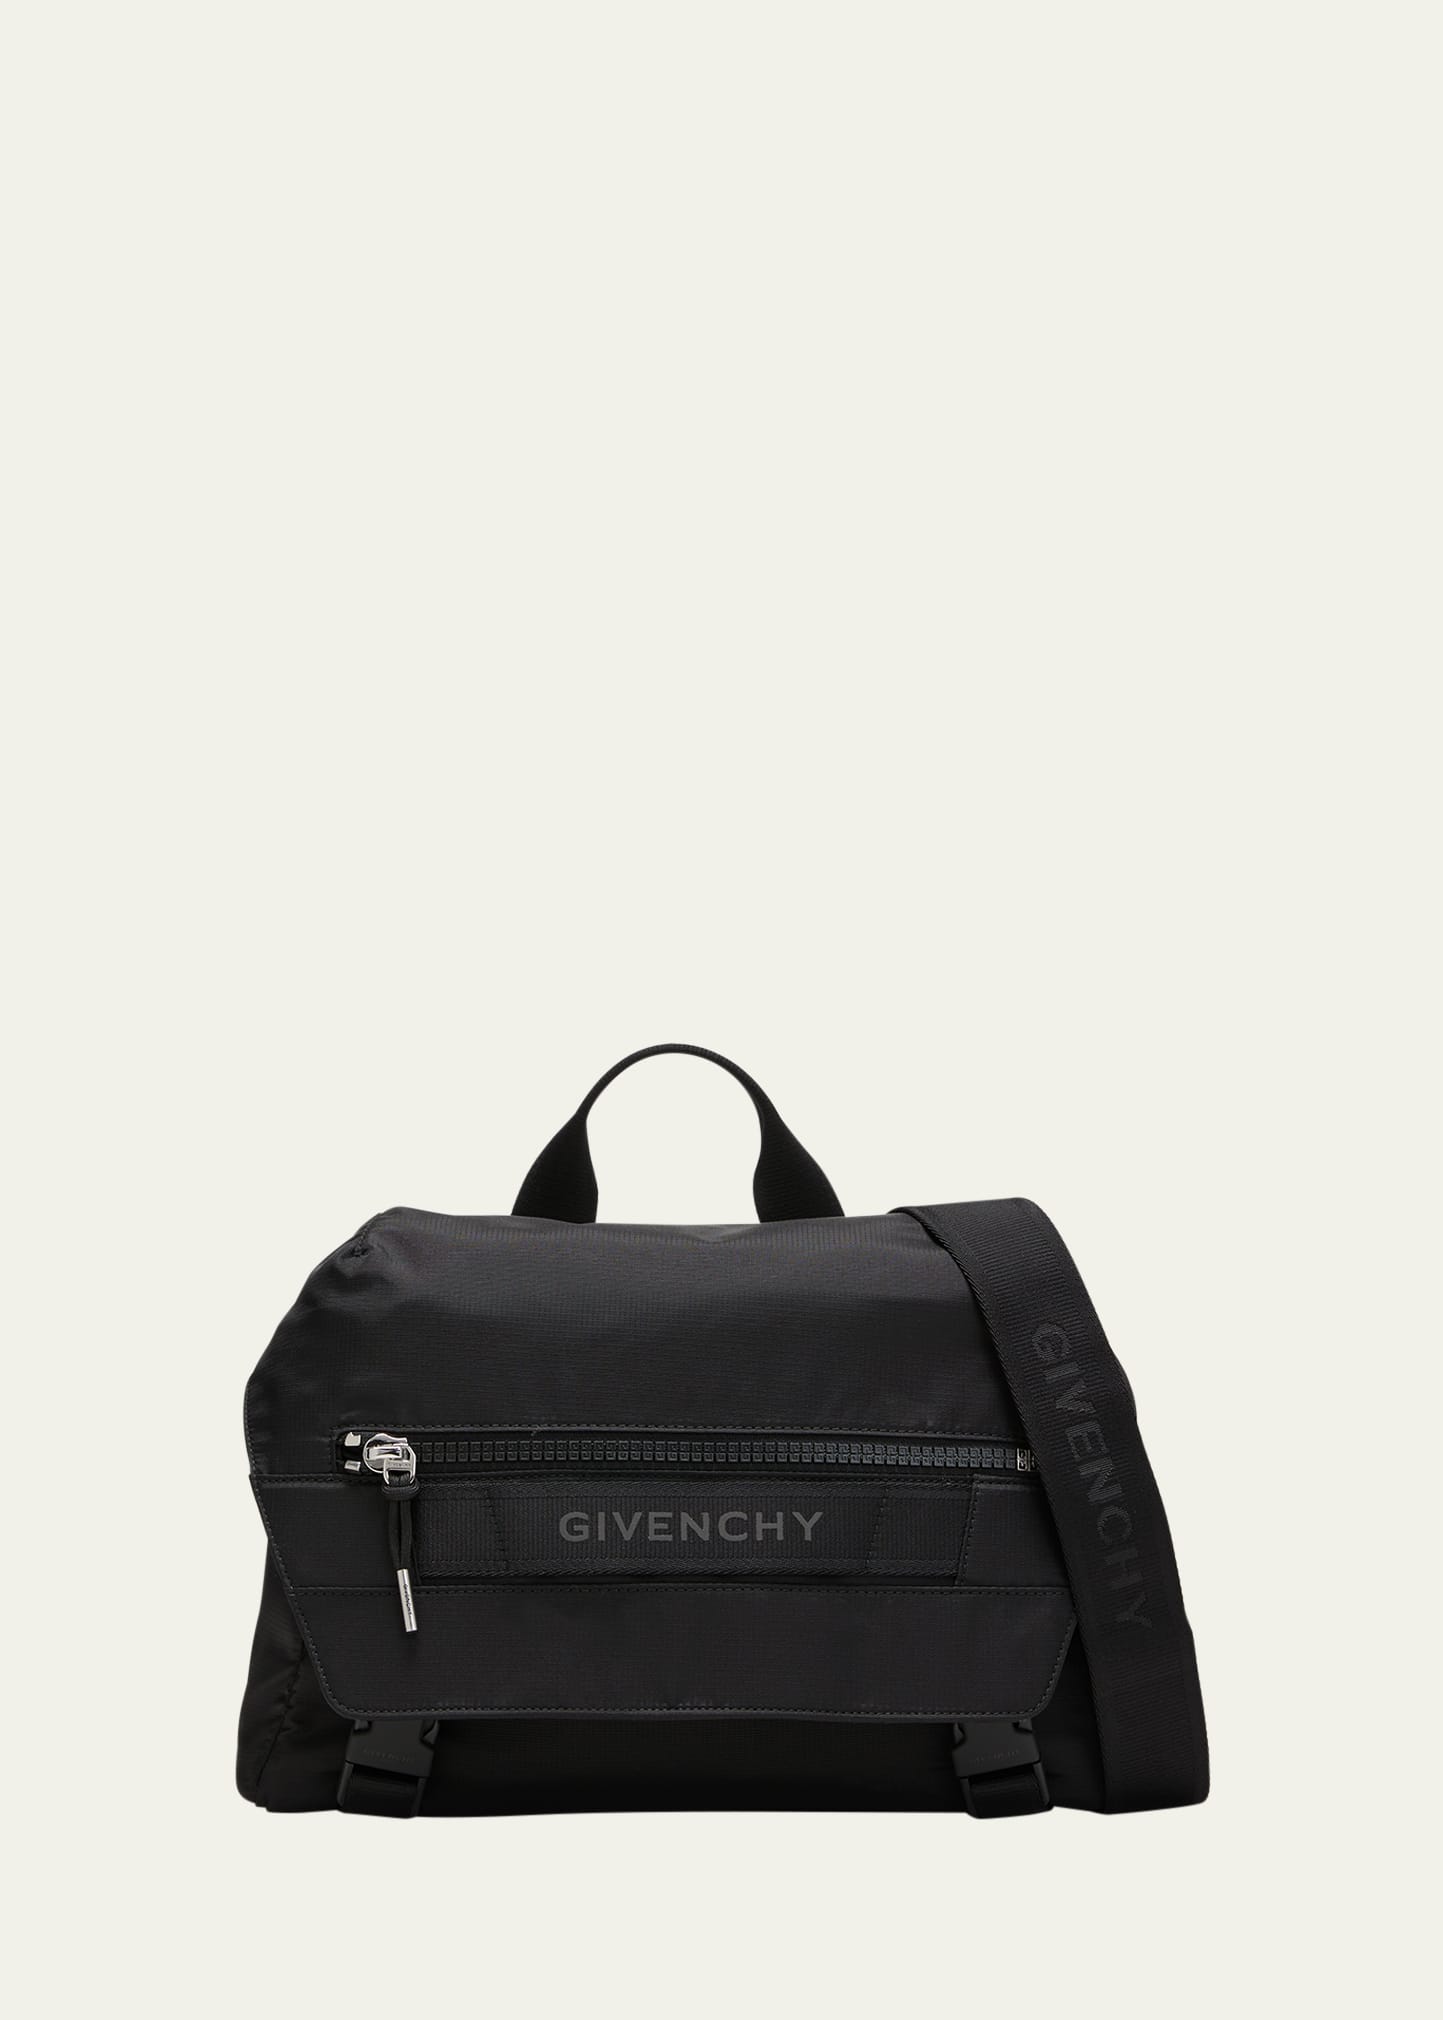 Givenchy Men's G-trek Messenger Bag In Nylon In Multicolor